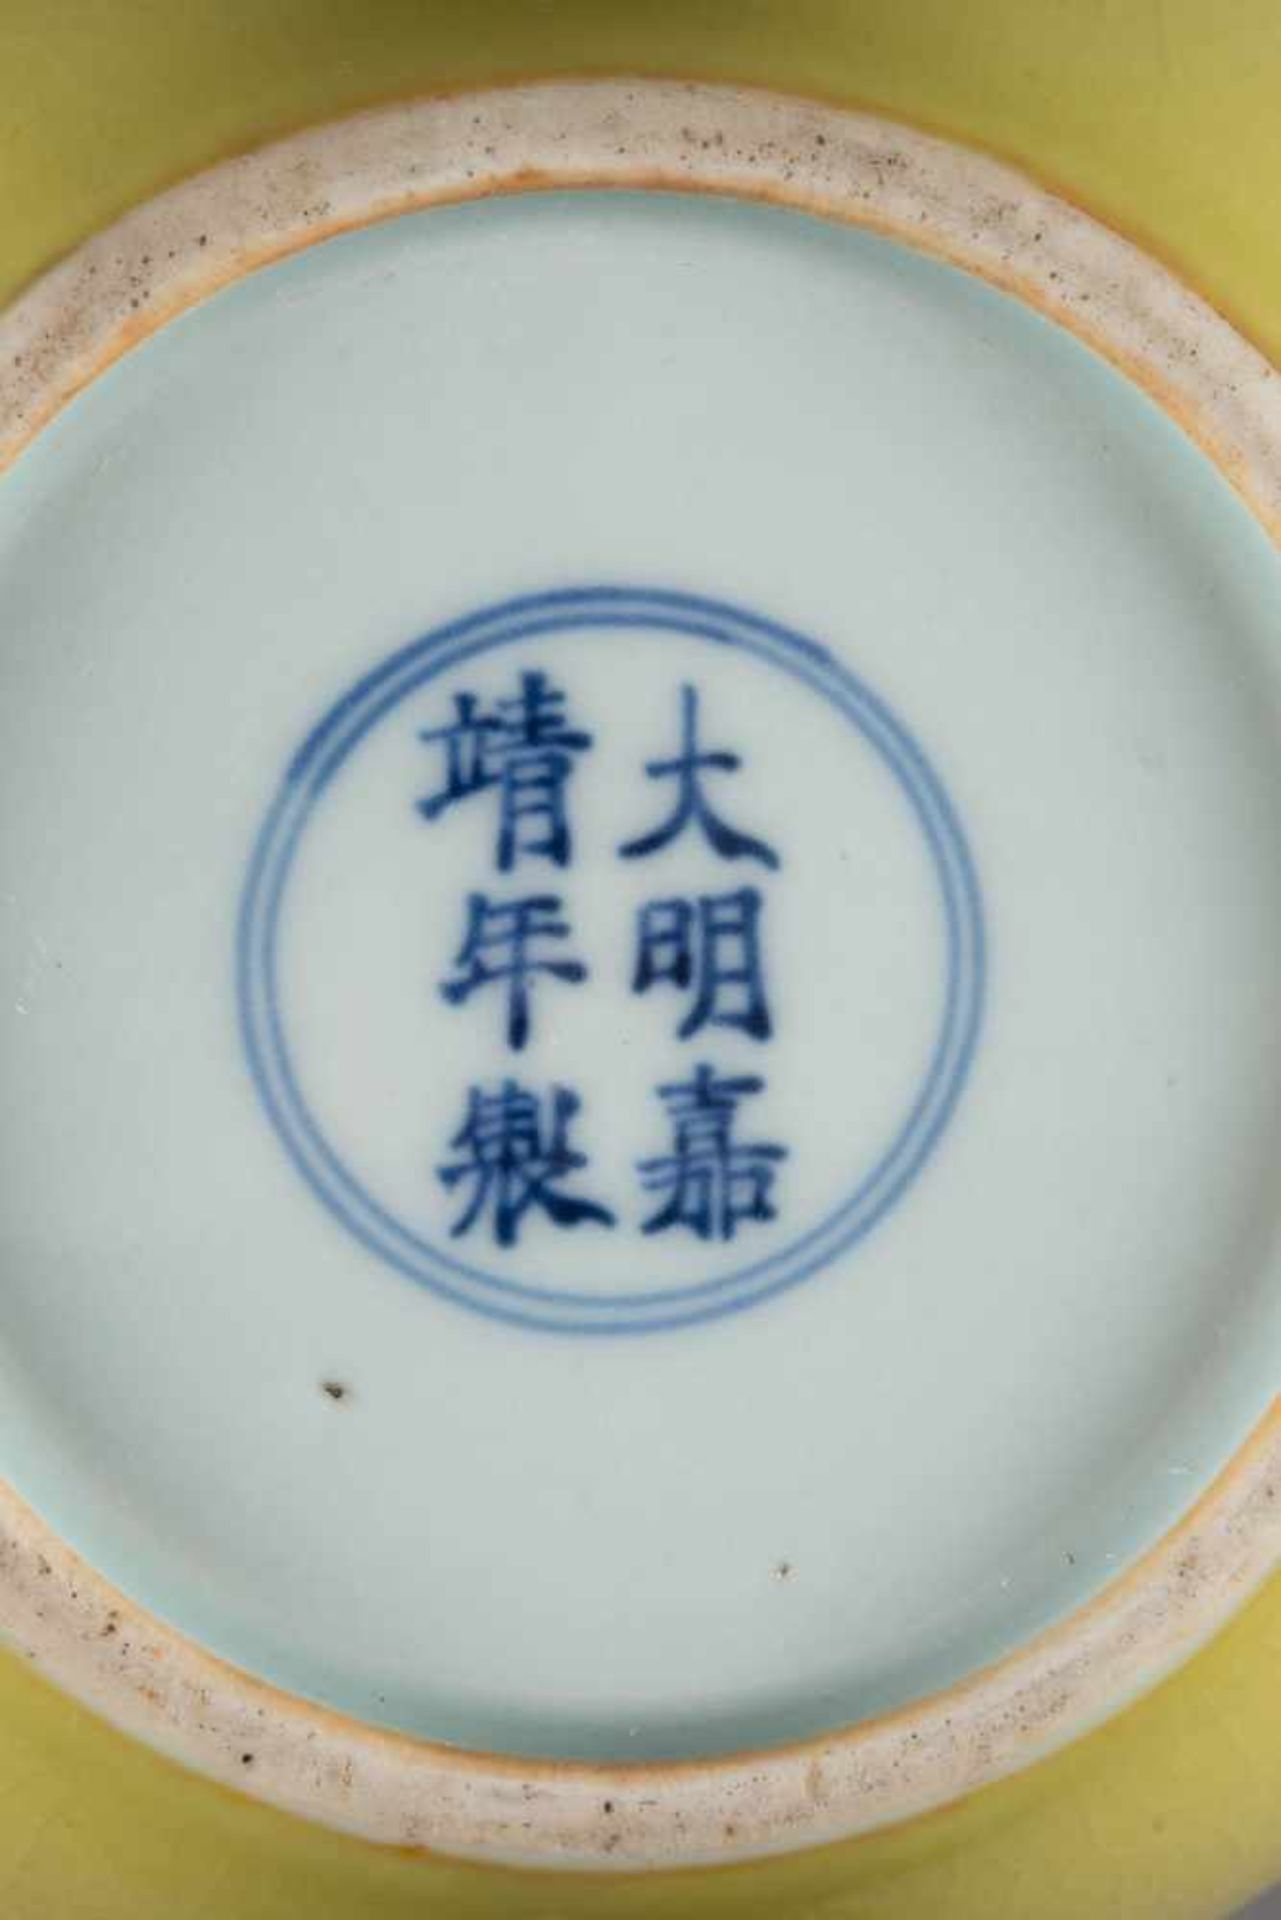 KLEINER GELBER TOPF China, 18. Jh. Porzellan, craquelierte Glasur. H. 13,4 cm. Im Boden Zeichenmarke - Bild 2 aus 2